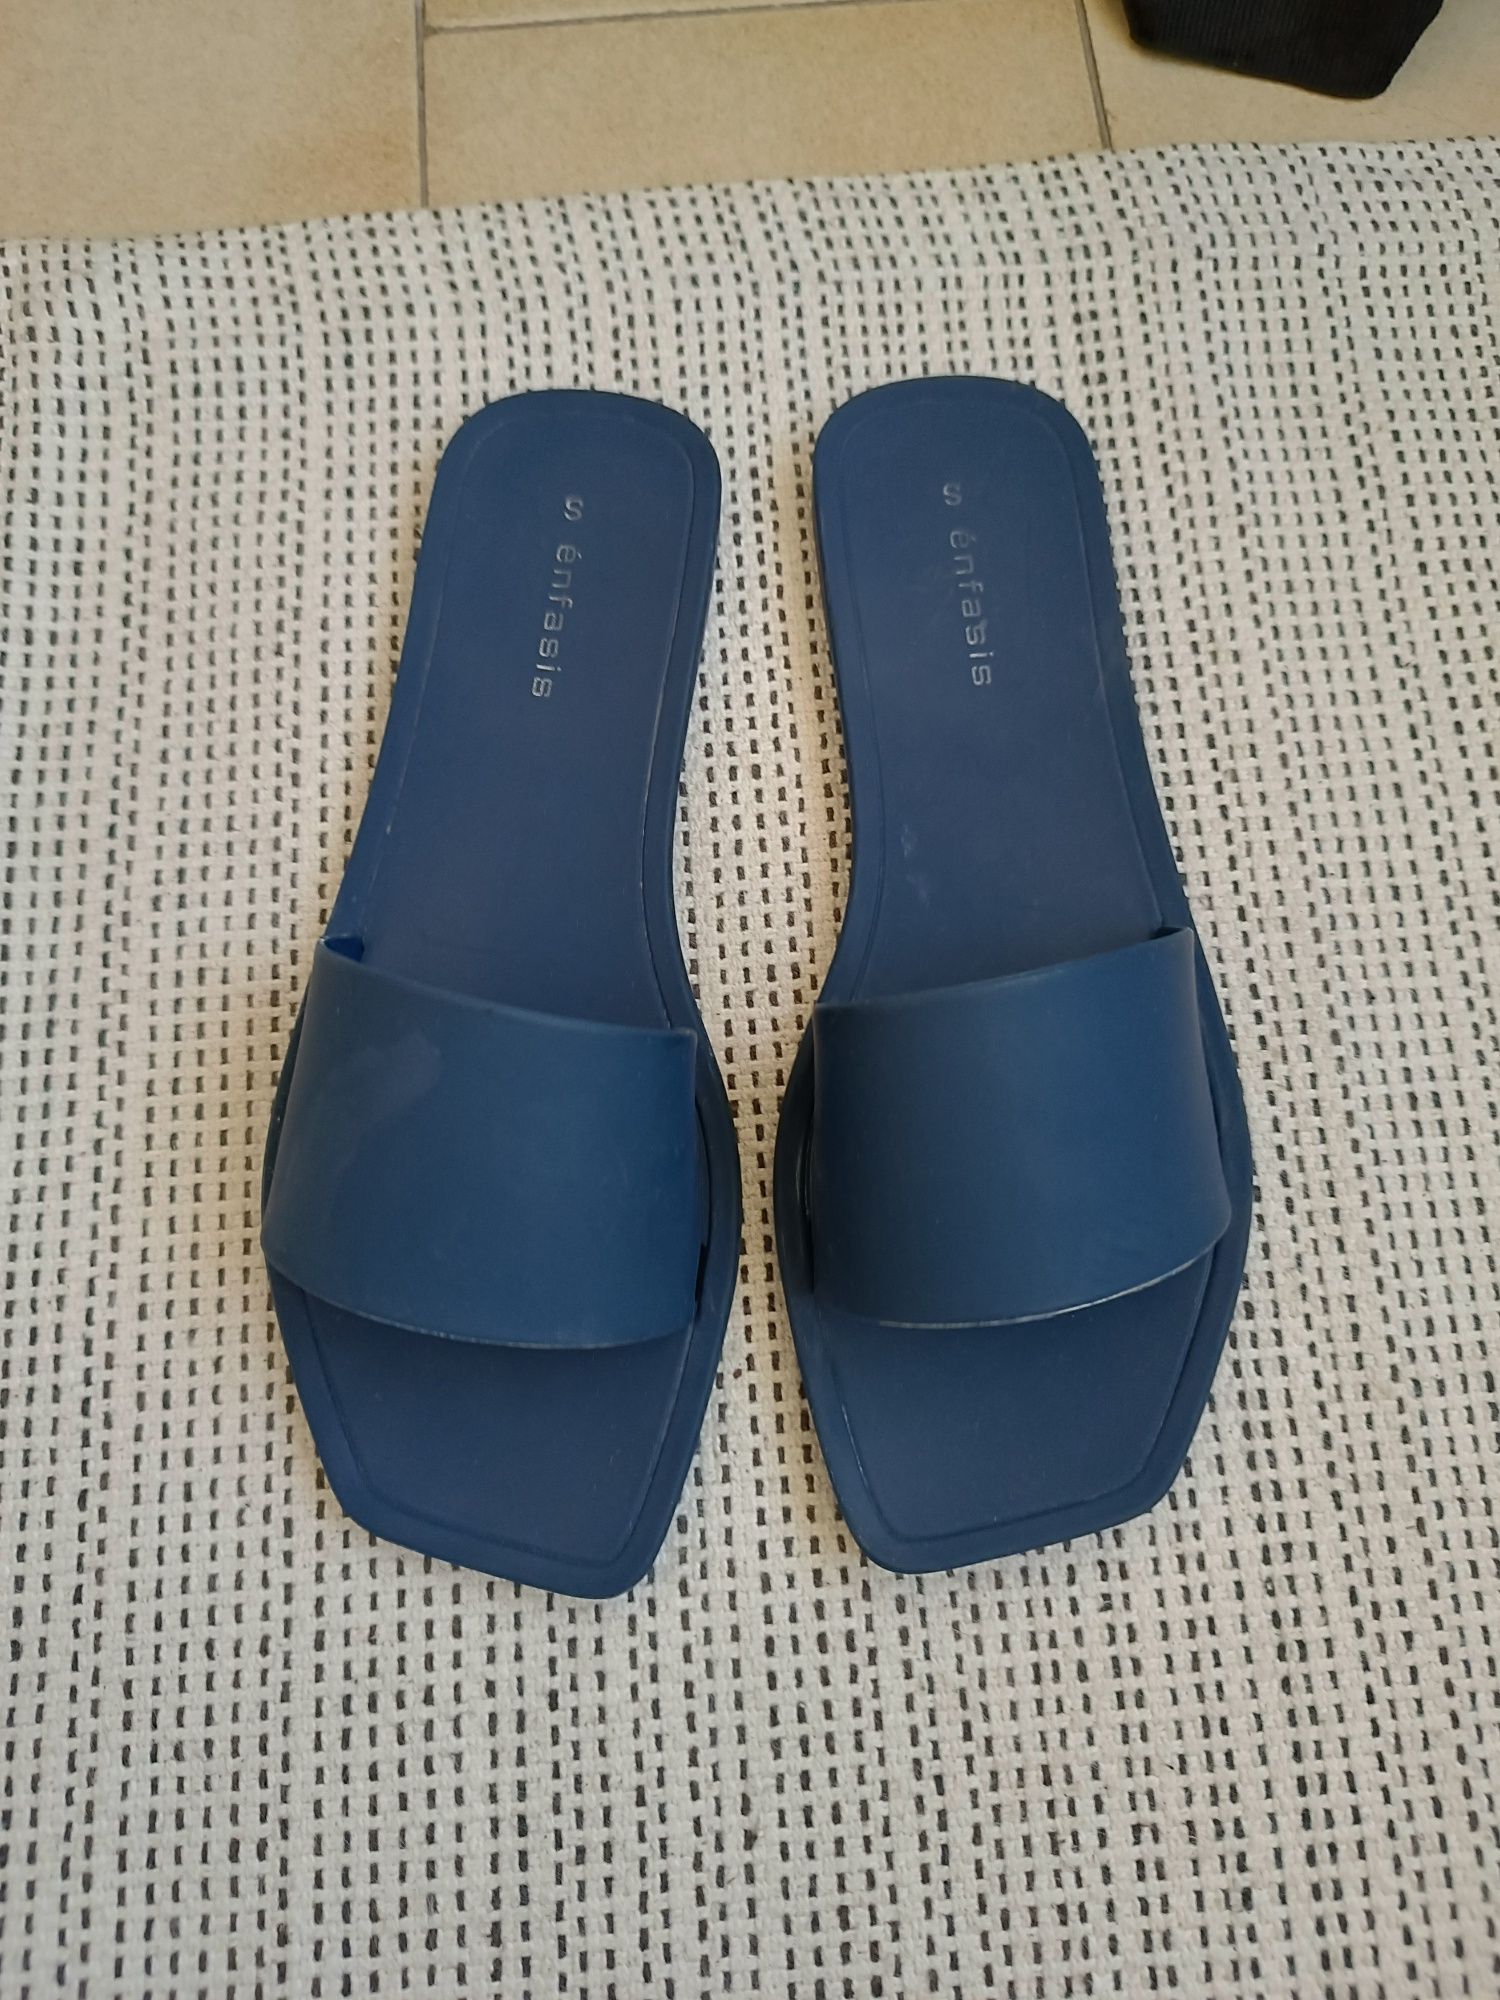 Sandálias/ chinelos azul marinho borracha